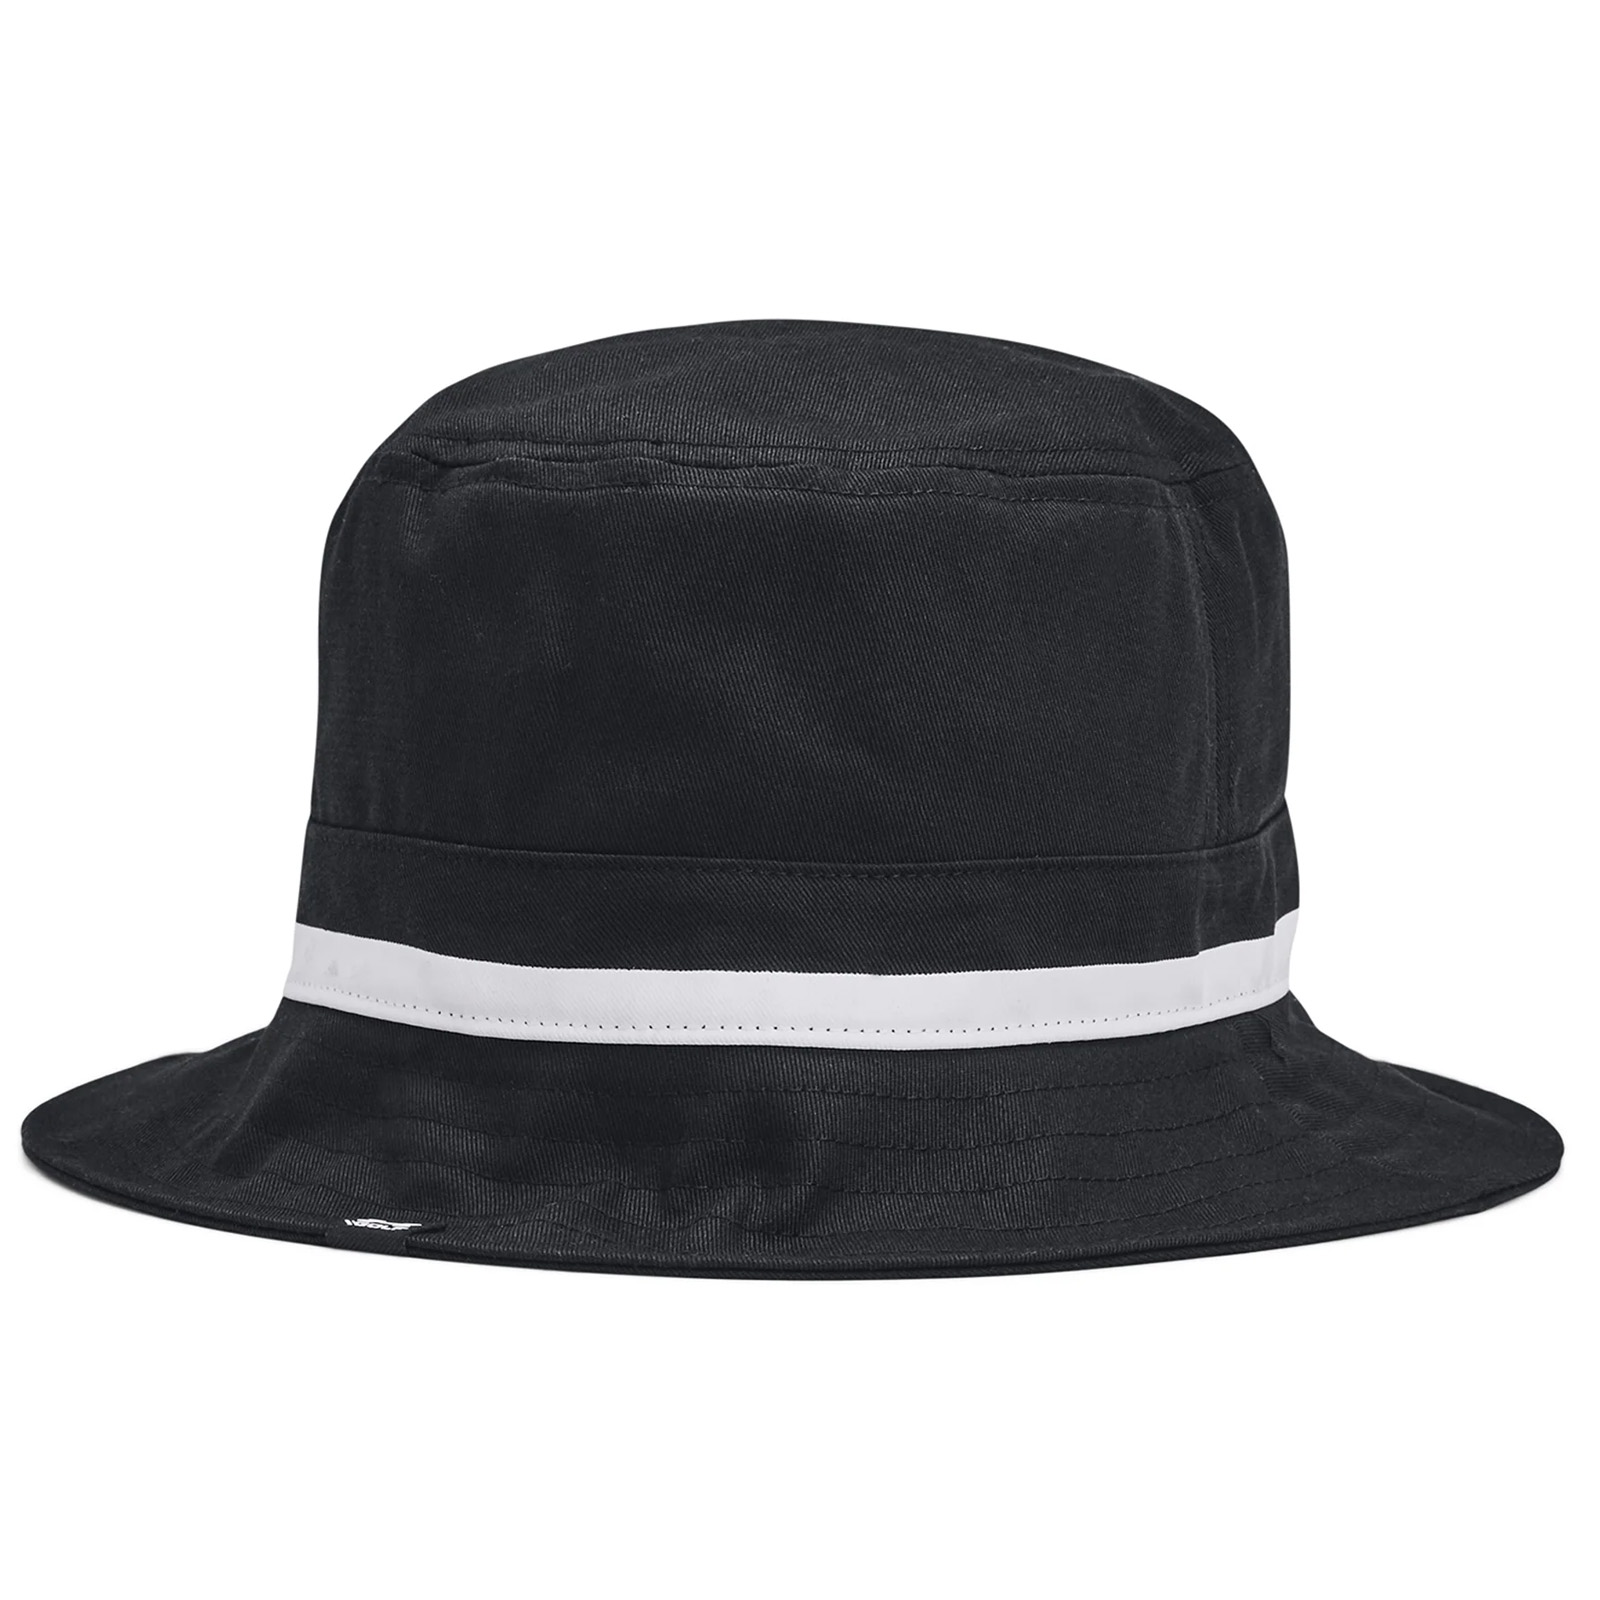 Under Armour Golf Driver Bucket Hat  - Black